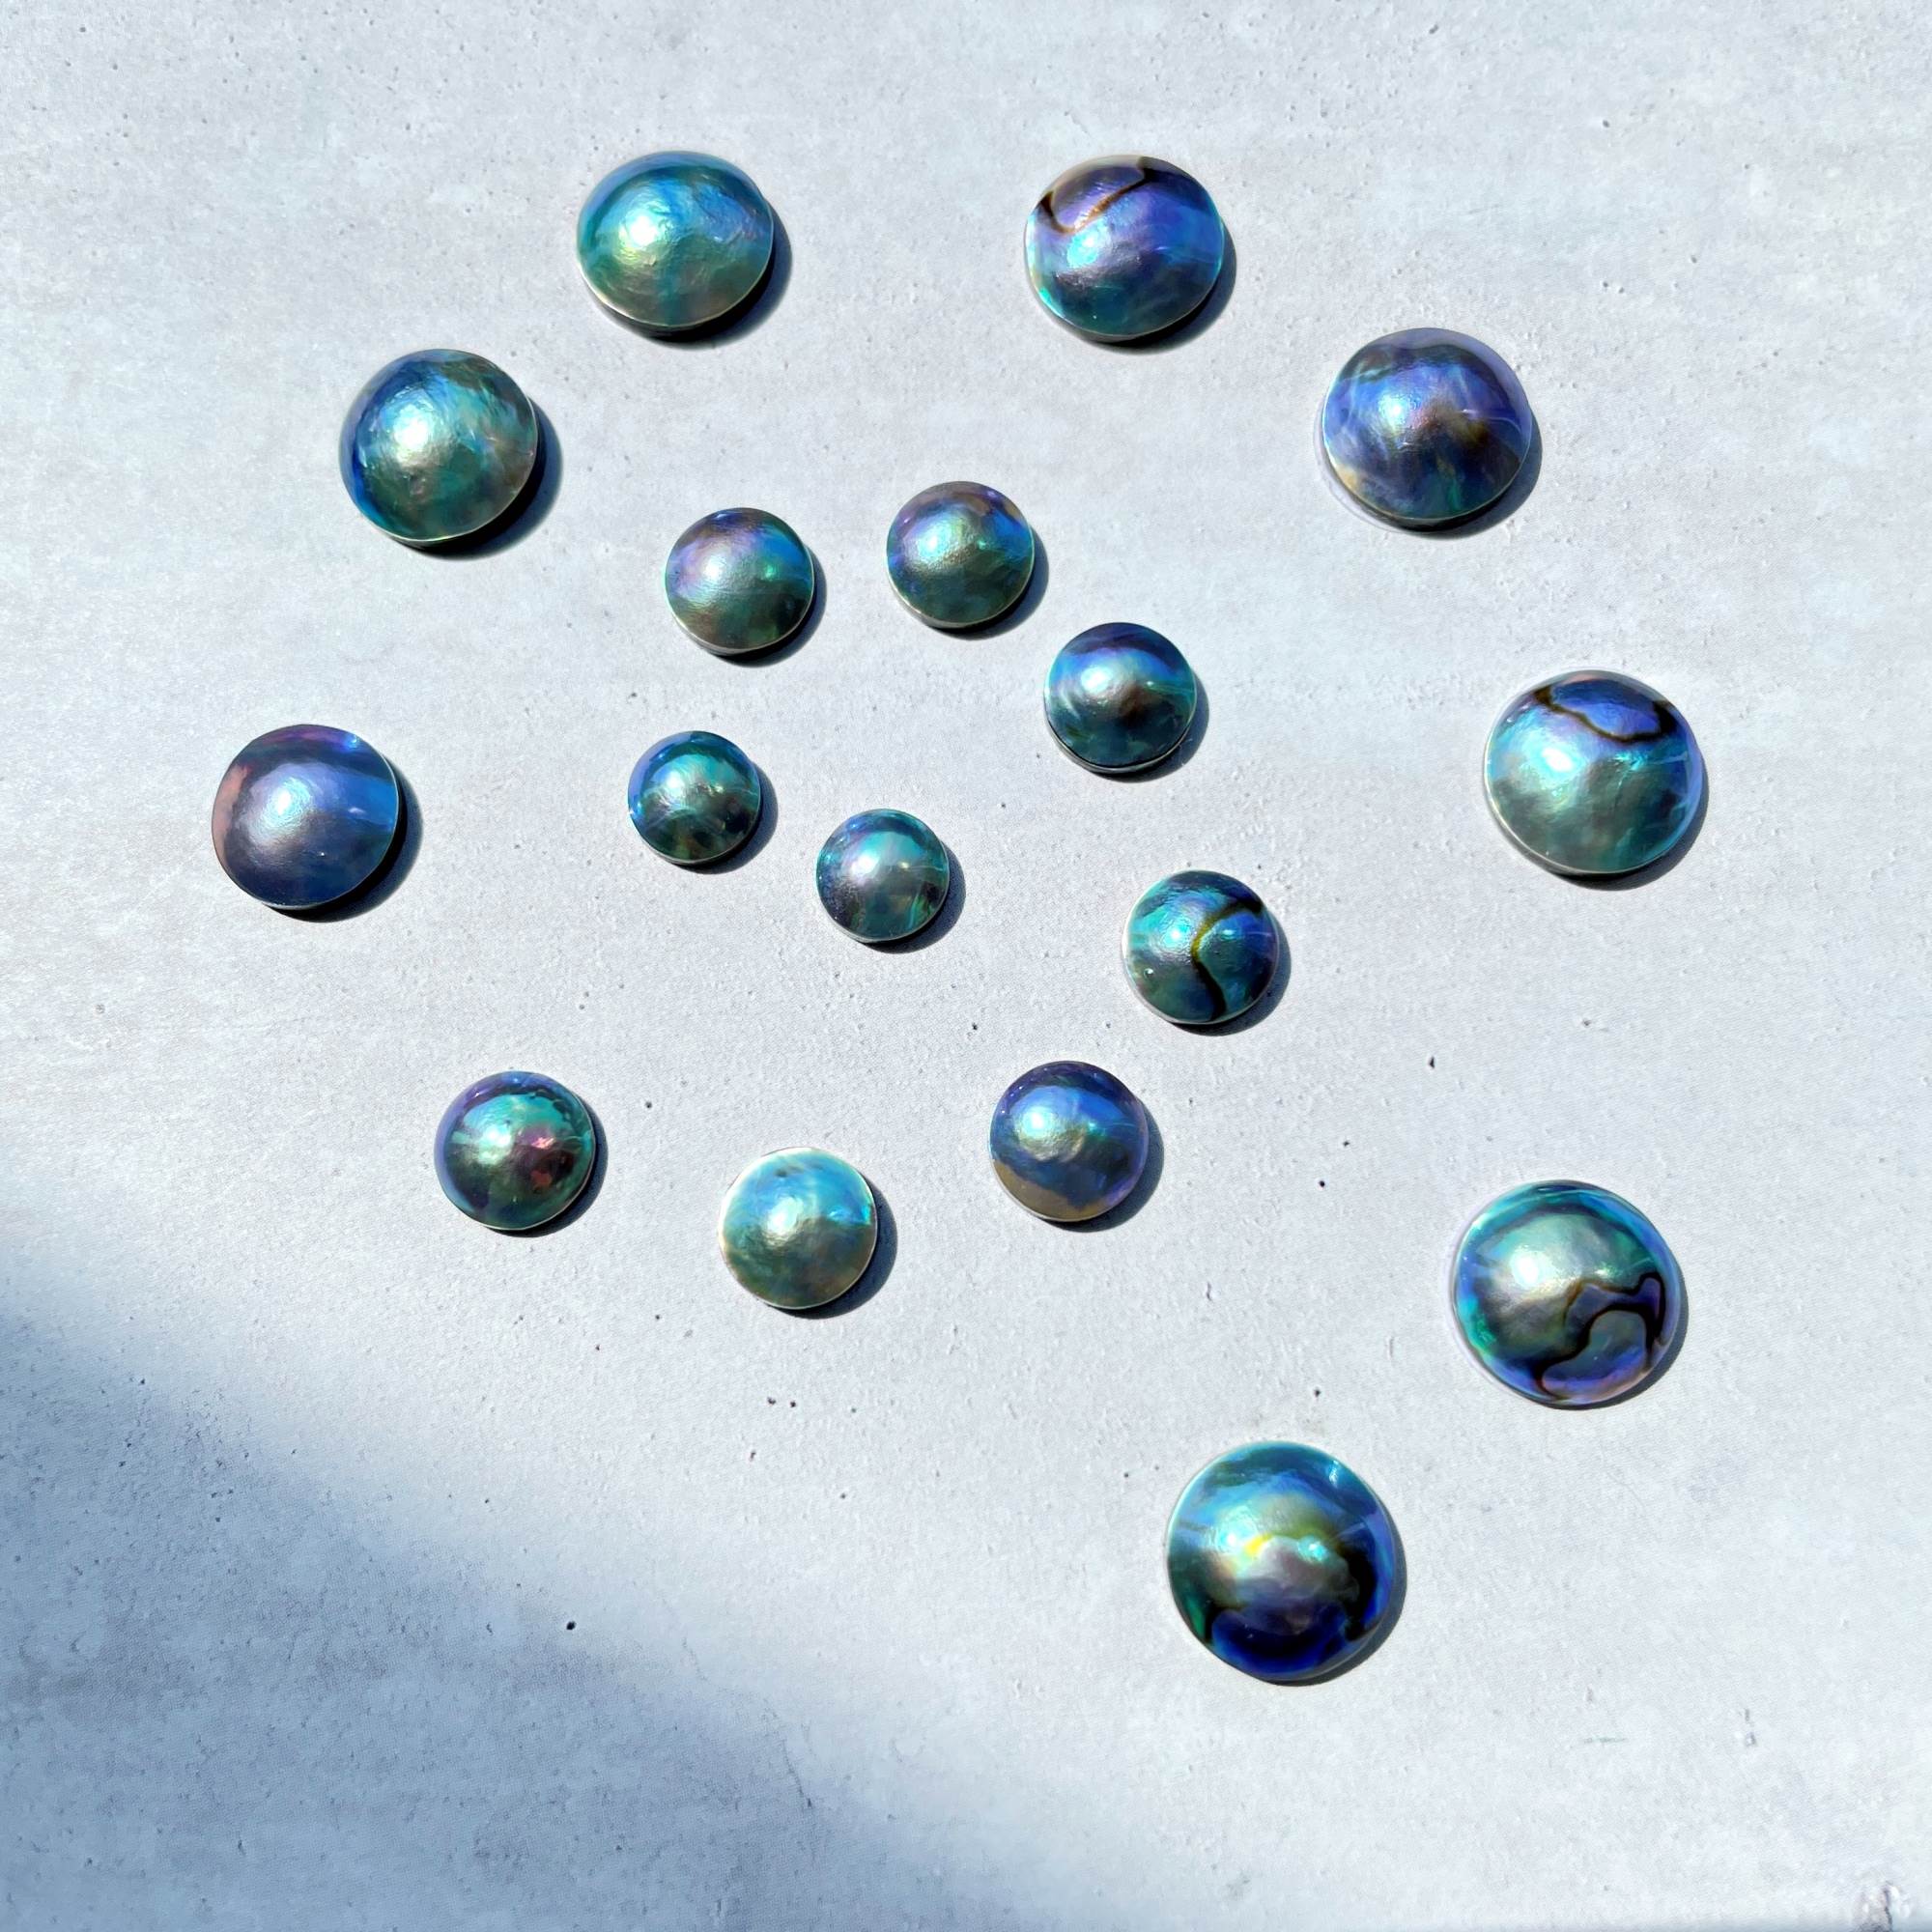 アワビから採れた稀少な真珠 アバロンパール シリーズ第2弾が7 1 金 より発売開始 株式会社wspのプレスリリース